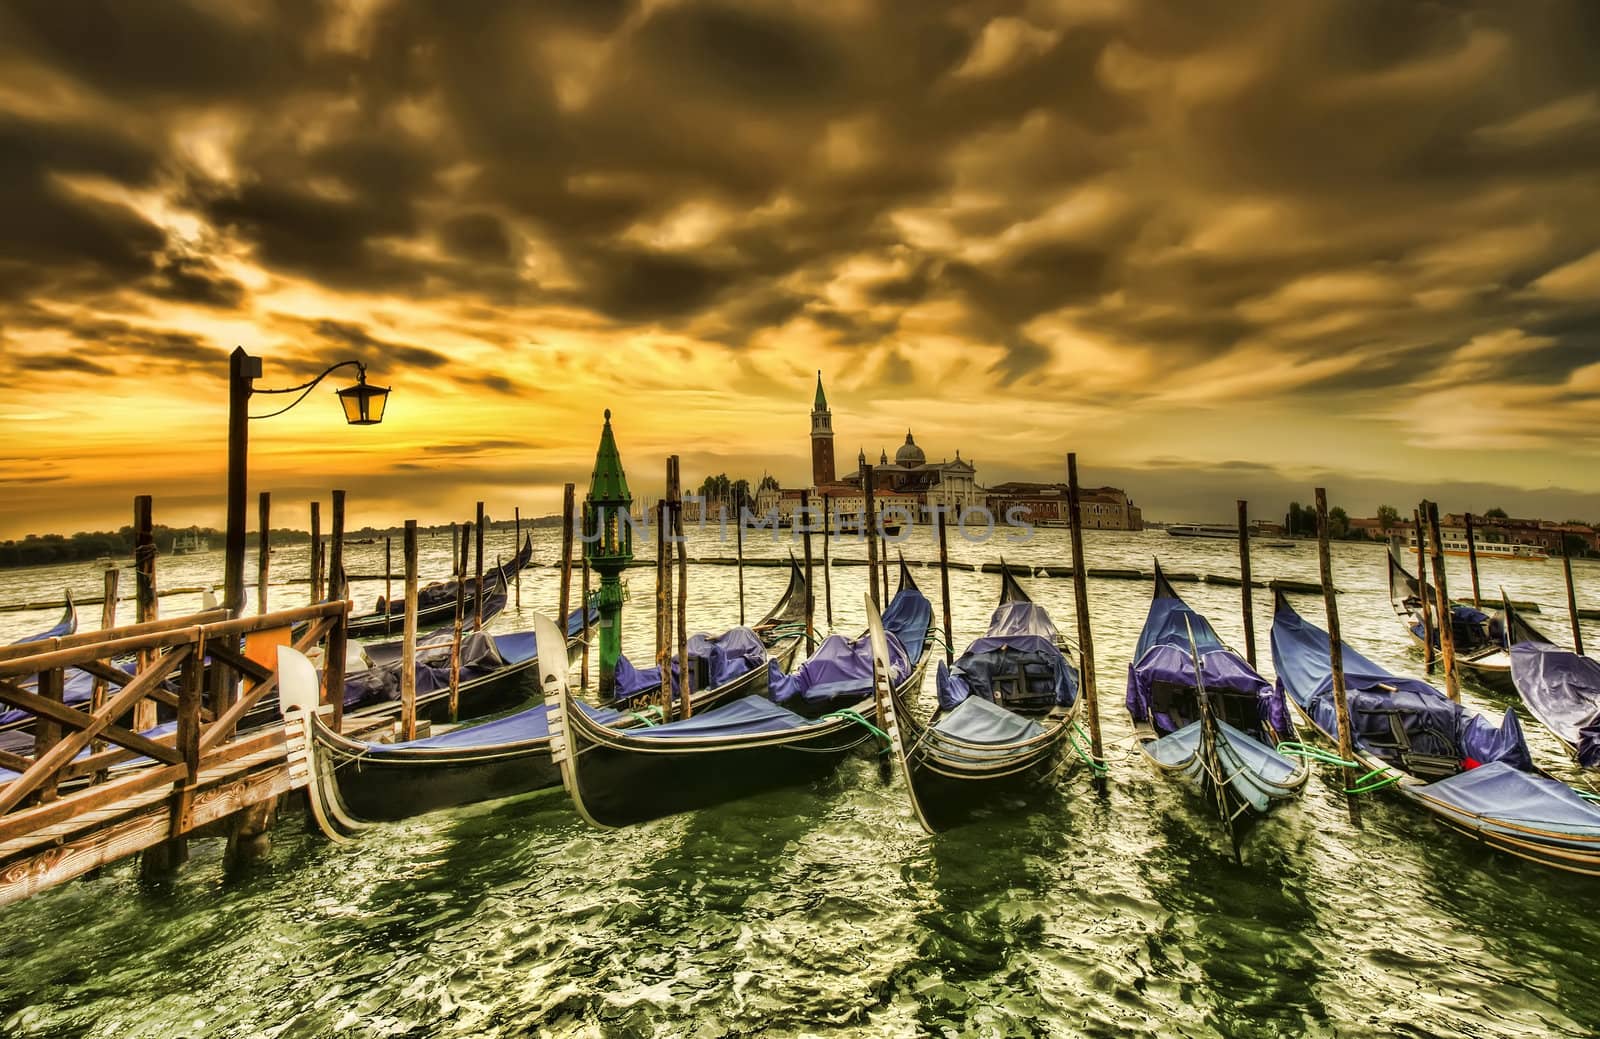 Venice sunset by johny007pan